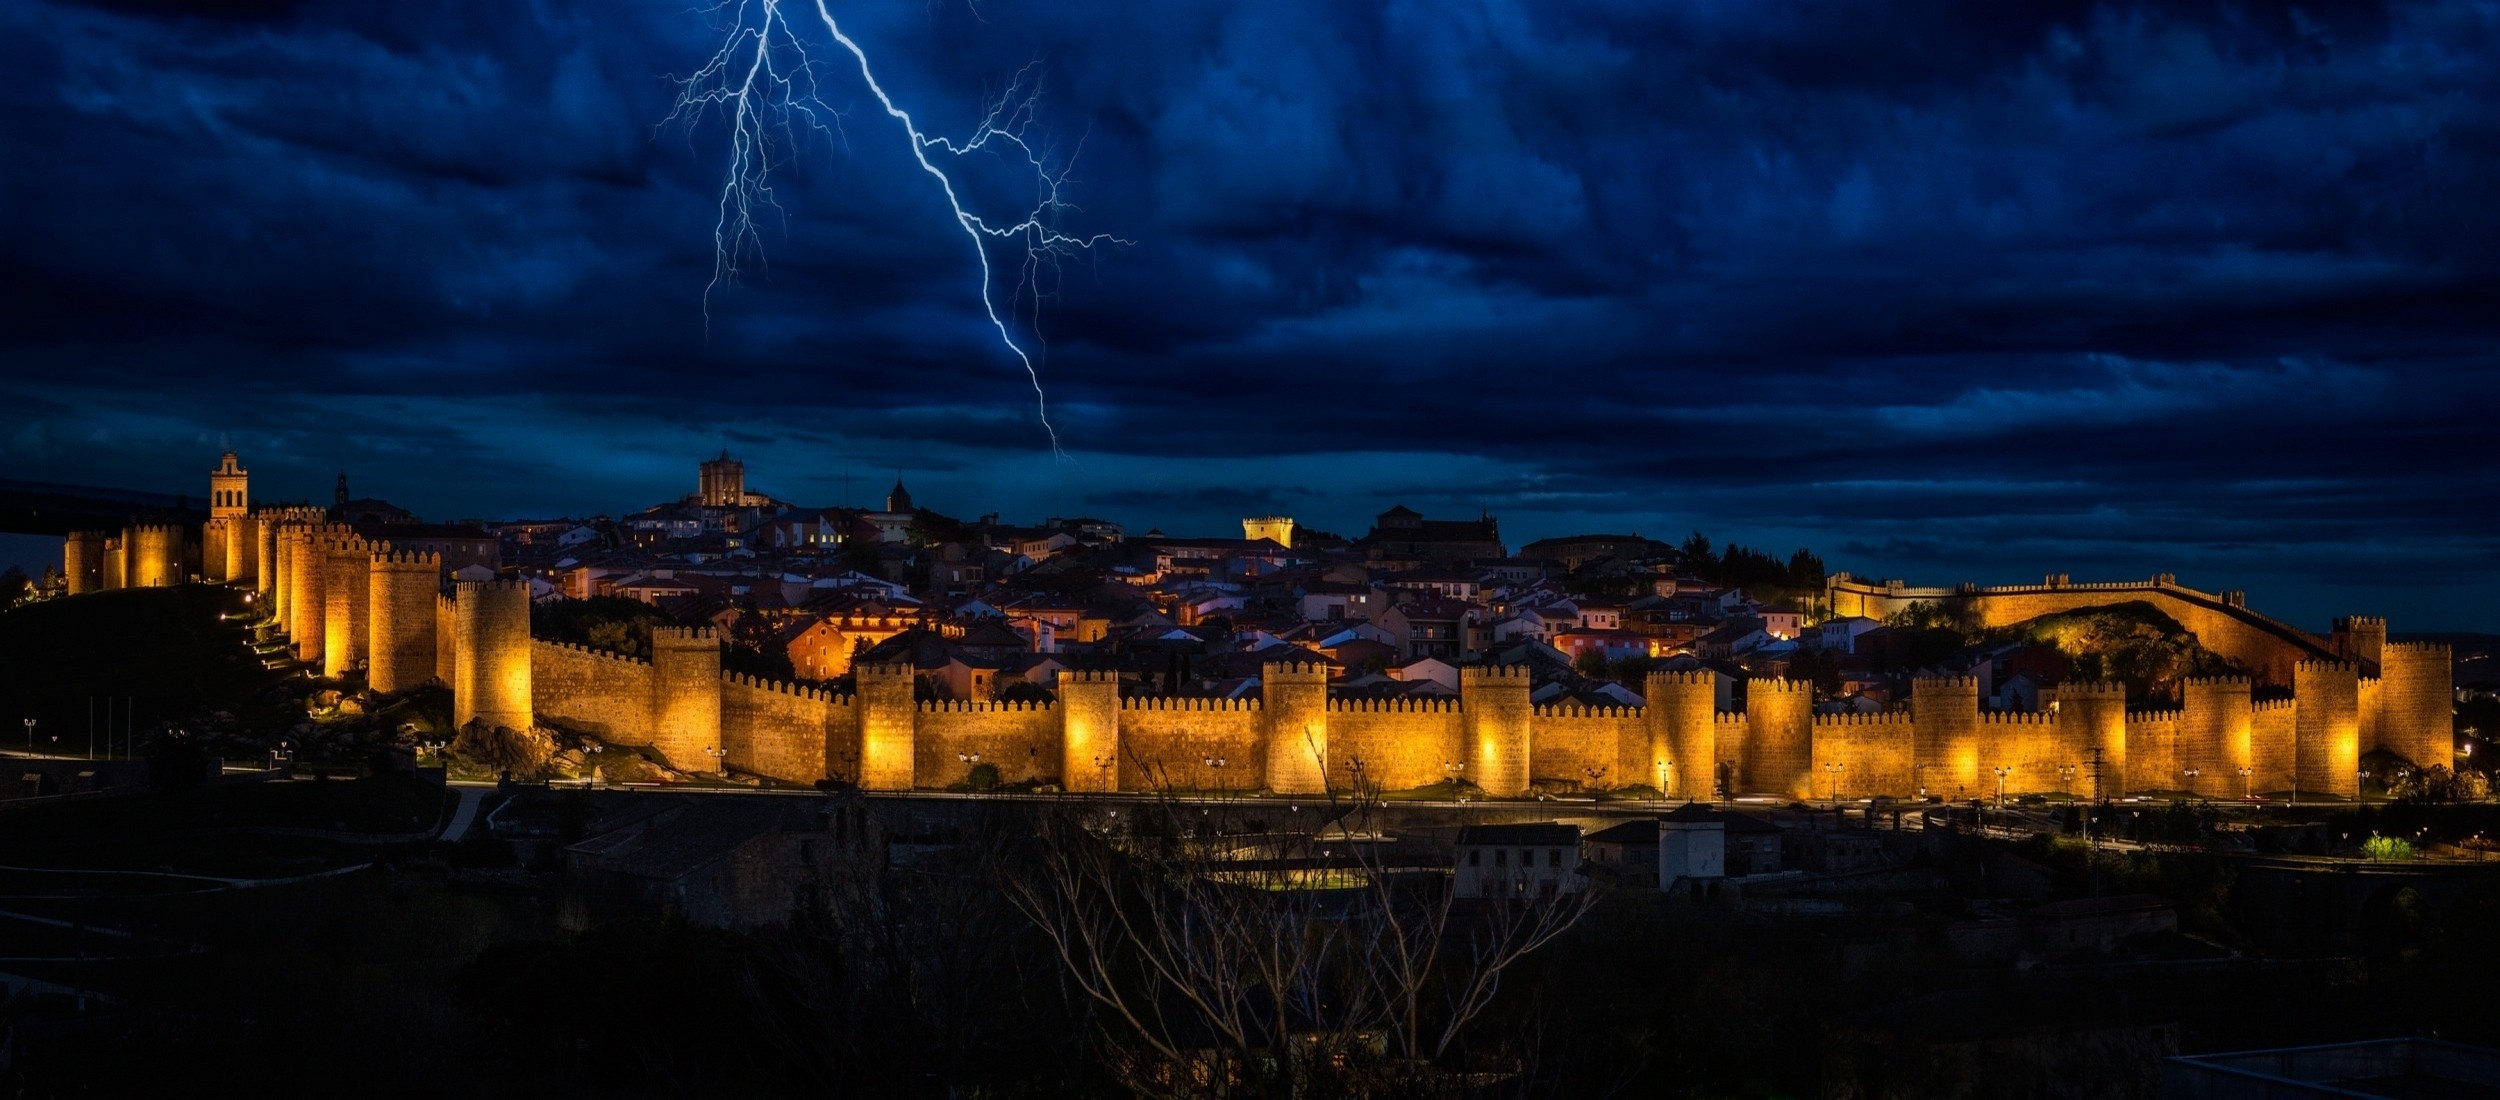 Download Wallpaper Thunderstorm Lightning Storm Night Avila City Spain Sky Castile And Leon Castile Leon, 2500x Night Storm Over The Medieval Walls Of Avila